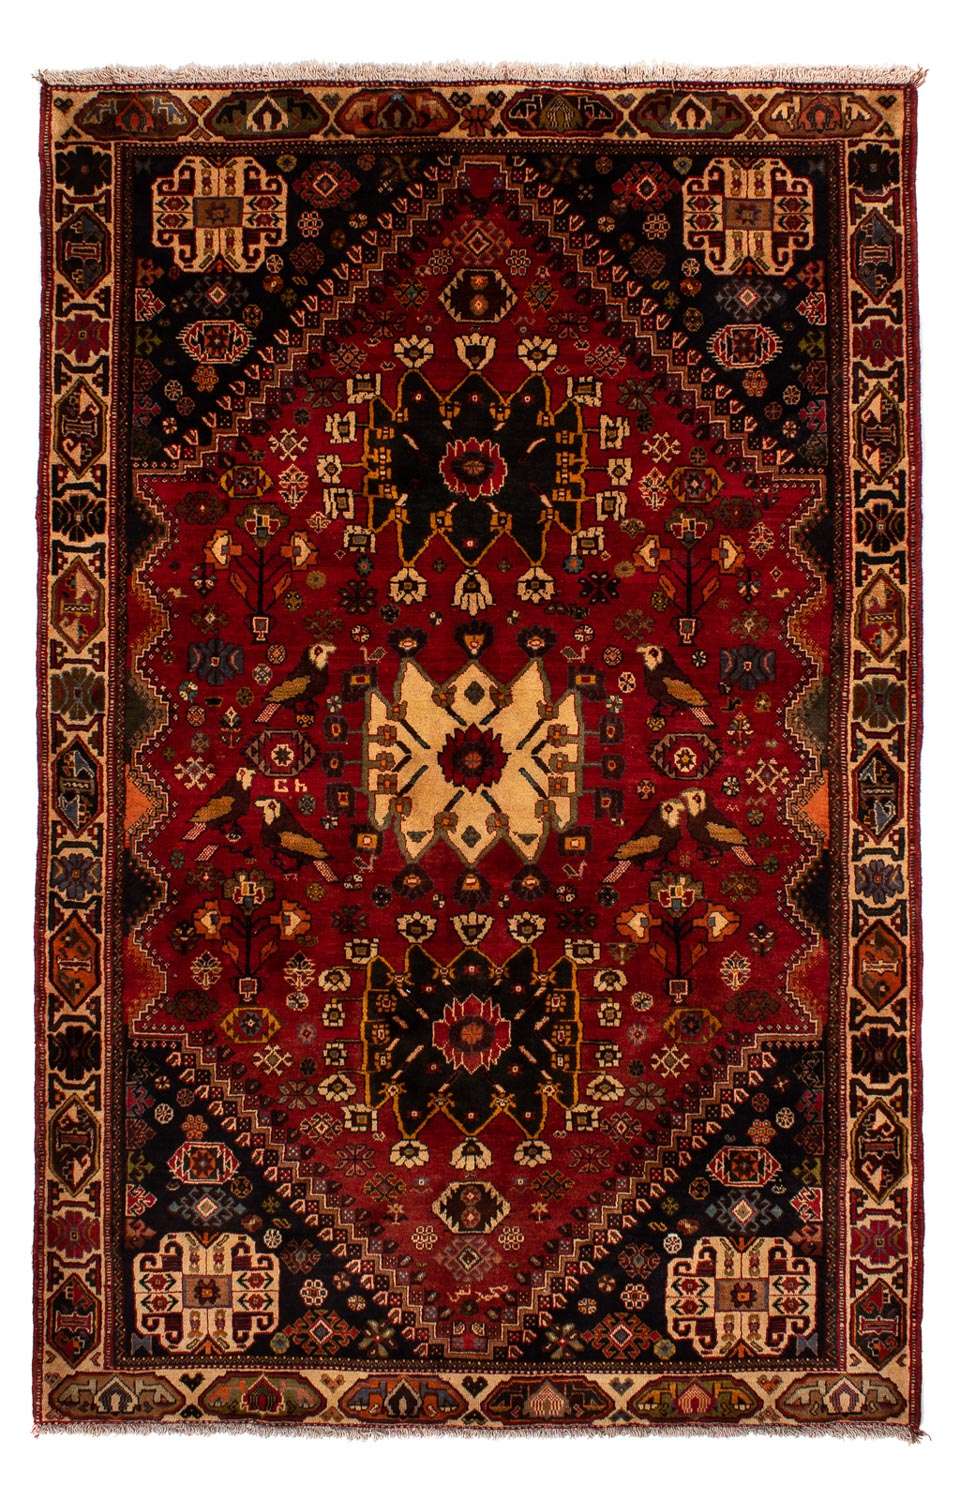 Tapis persan - Nomadic - 284 x 185 cm - rouge foncé